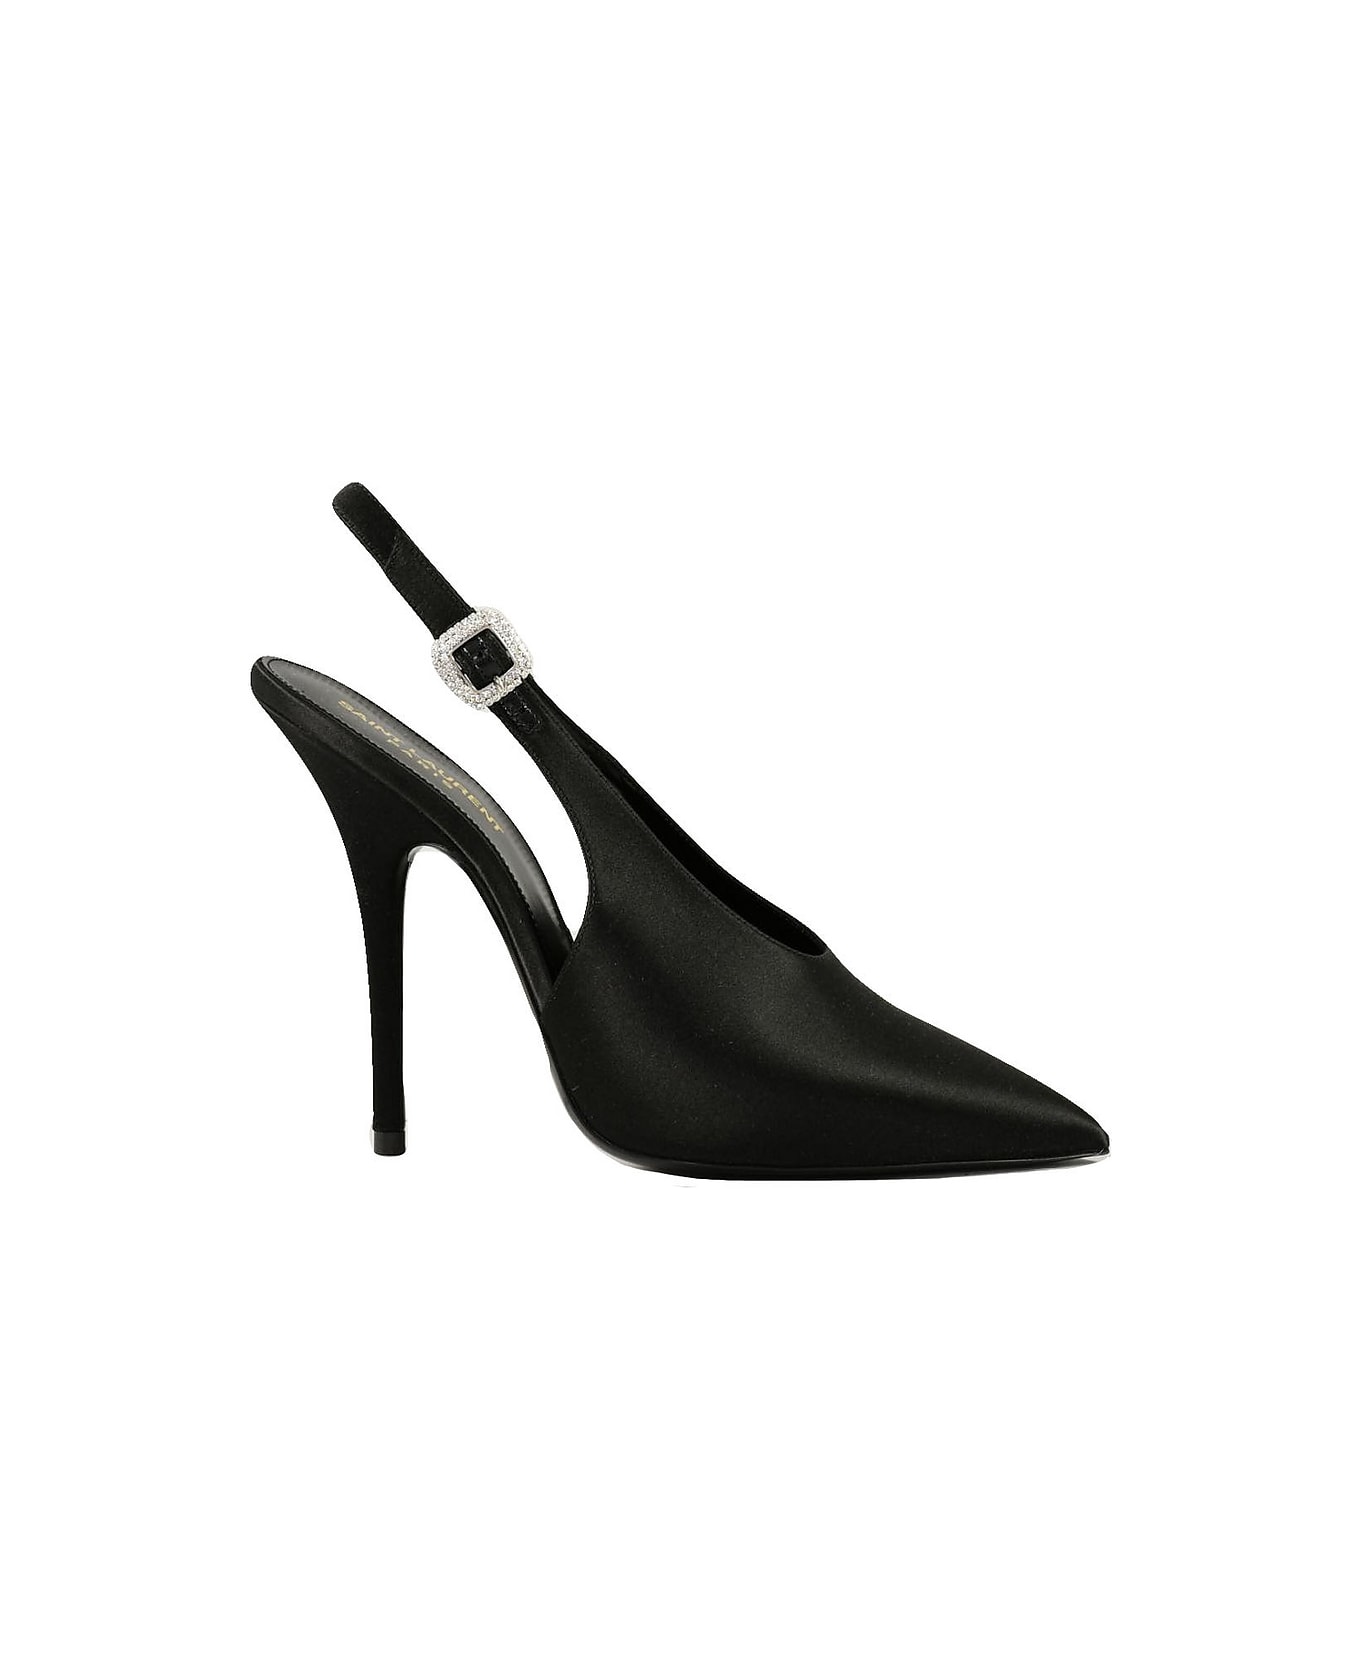 Saint Laurent Women's Black Shoes - Black